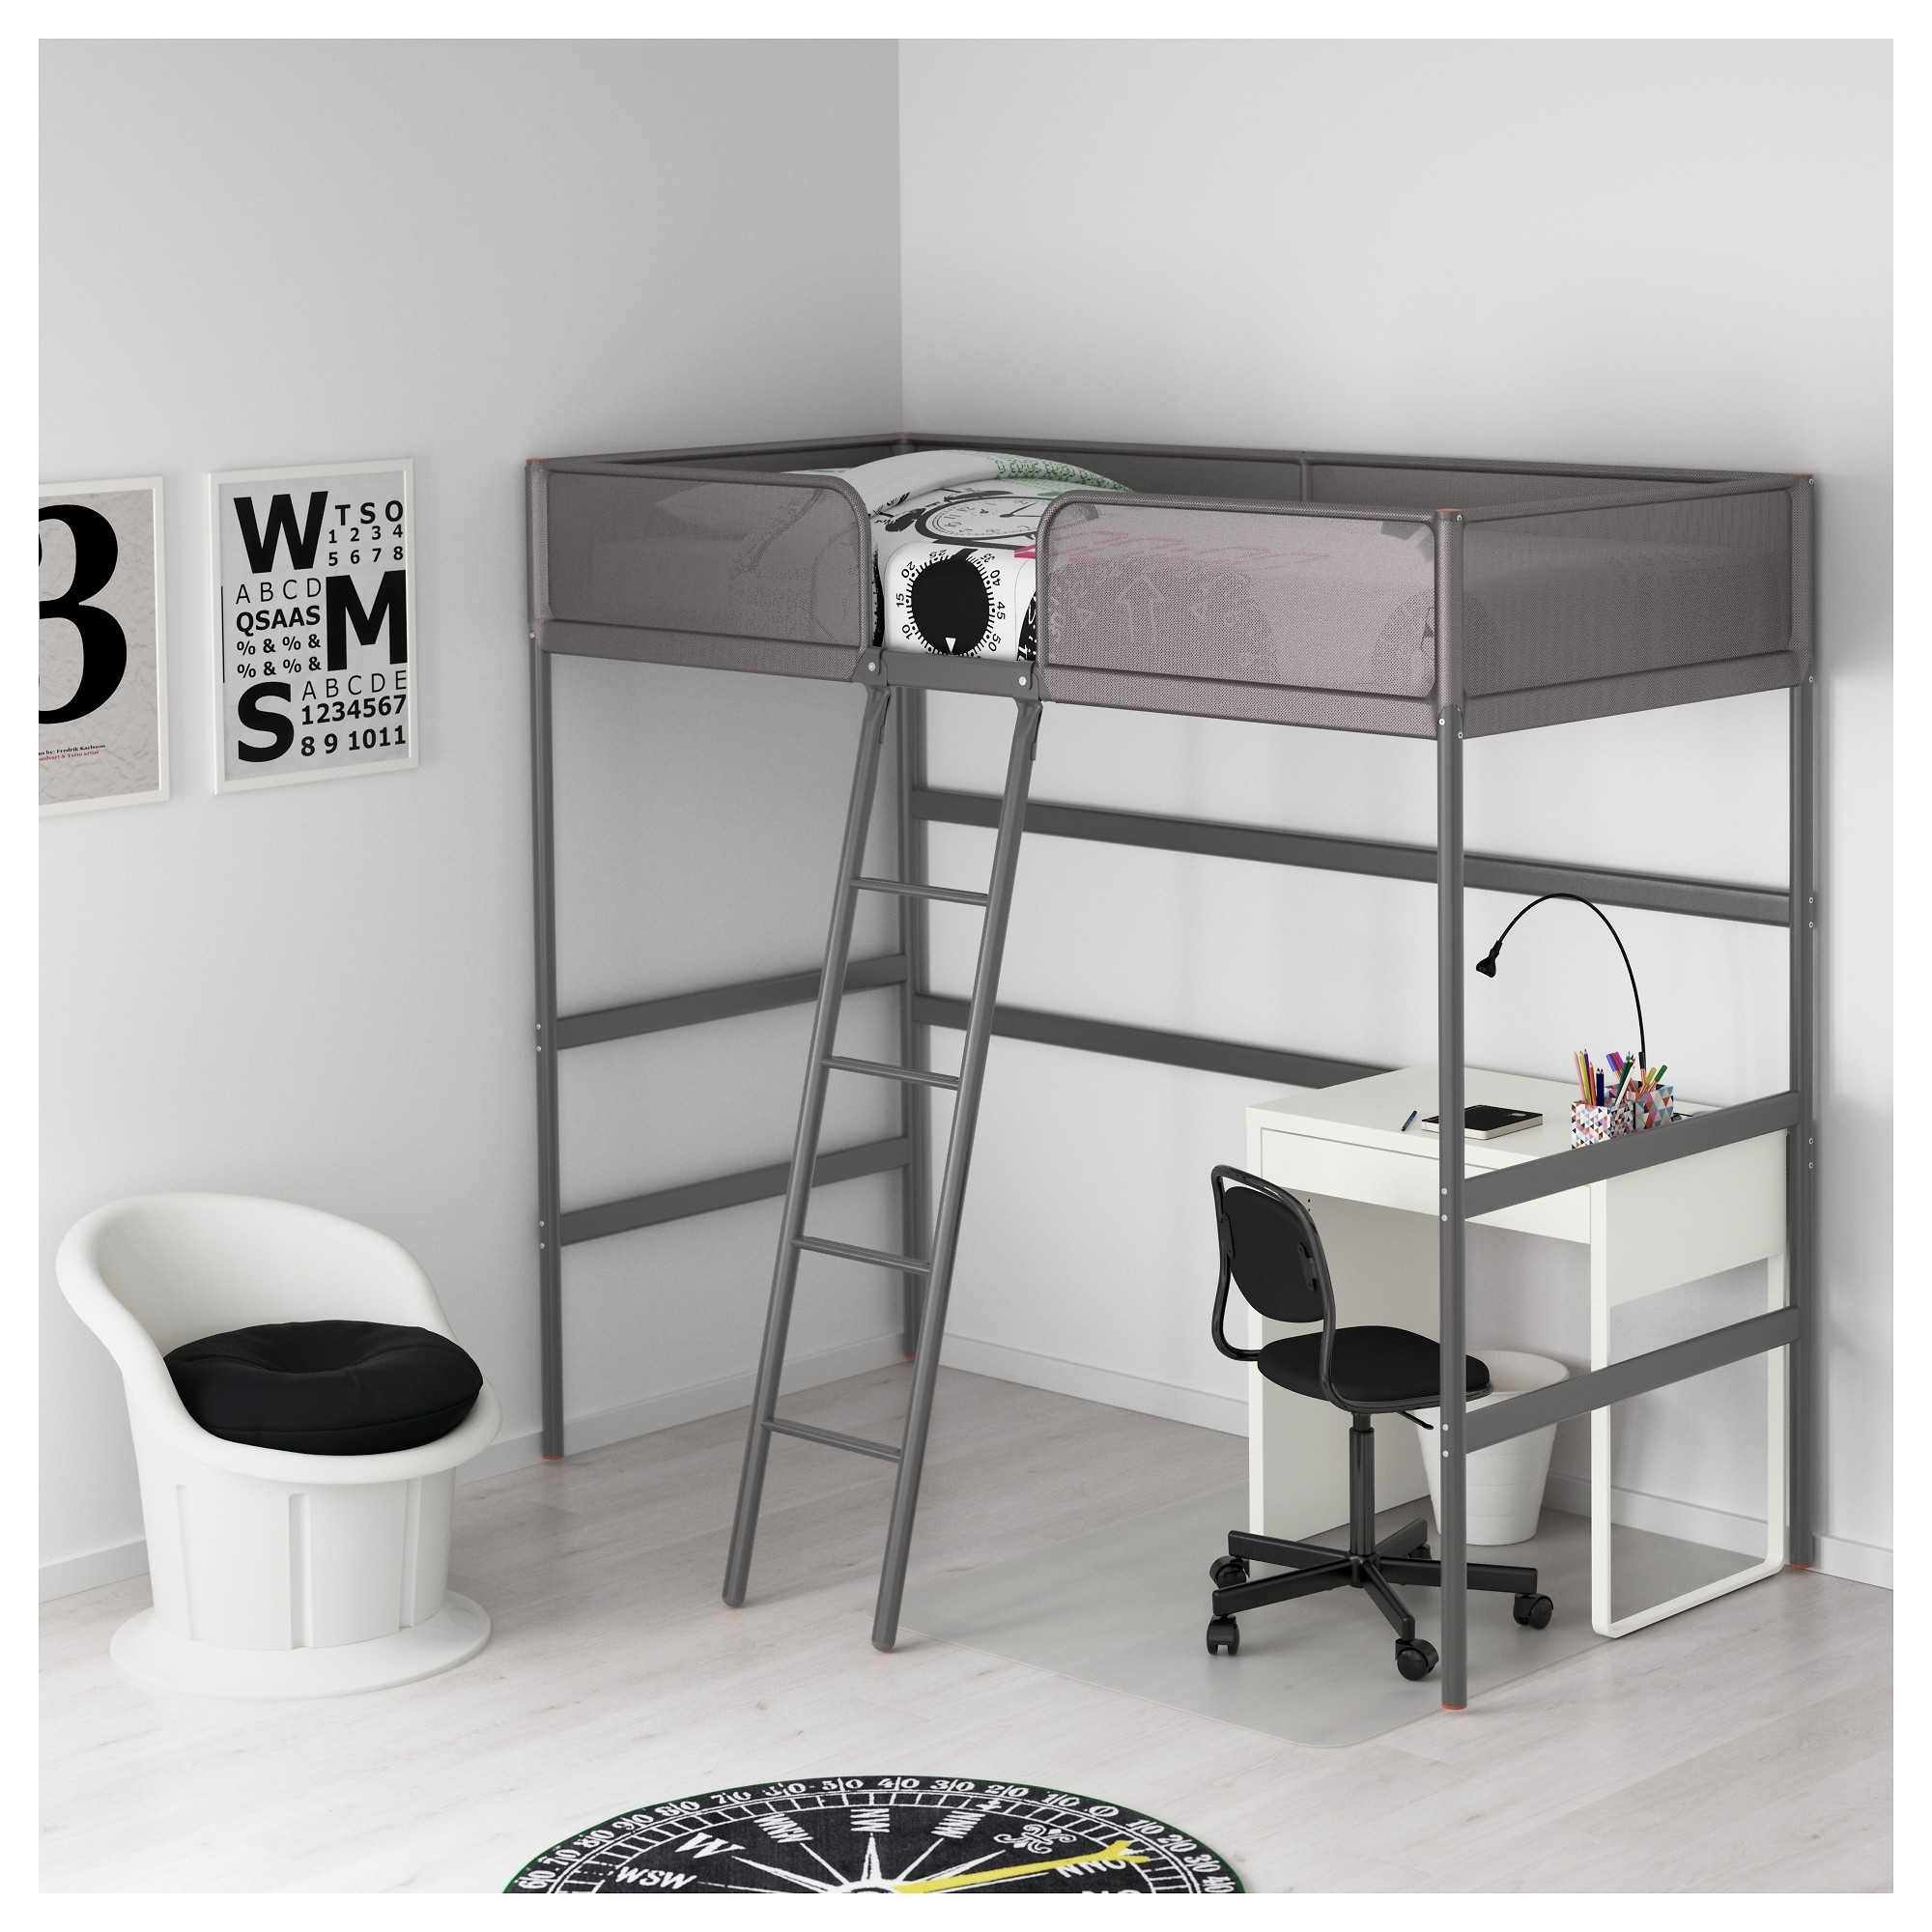 Moreel Productief merknaam IKEA Loft Beds - To Buy or Not in IKEA? 5 Reviews - VisualHunt